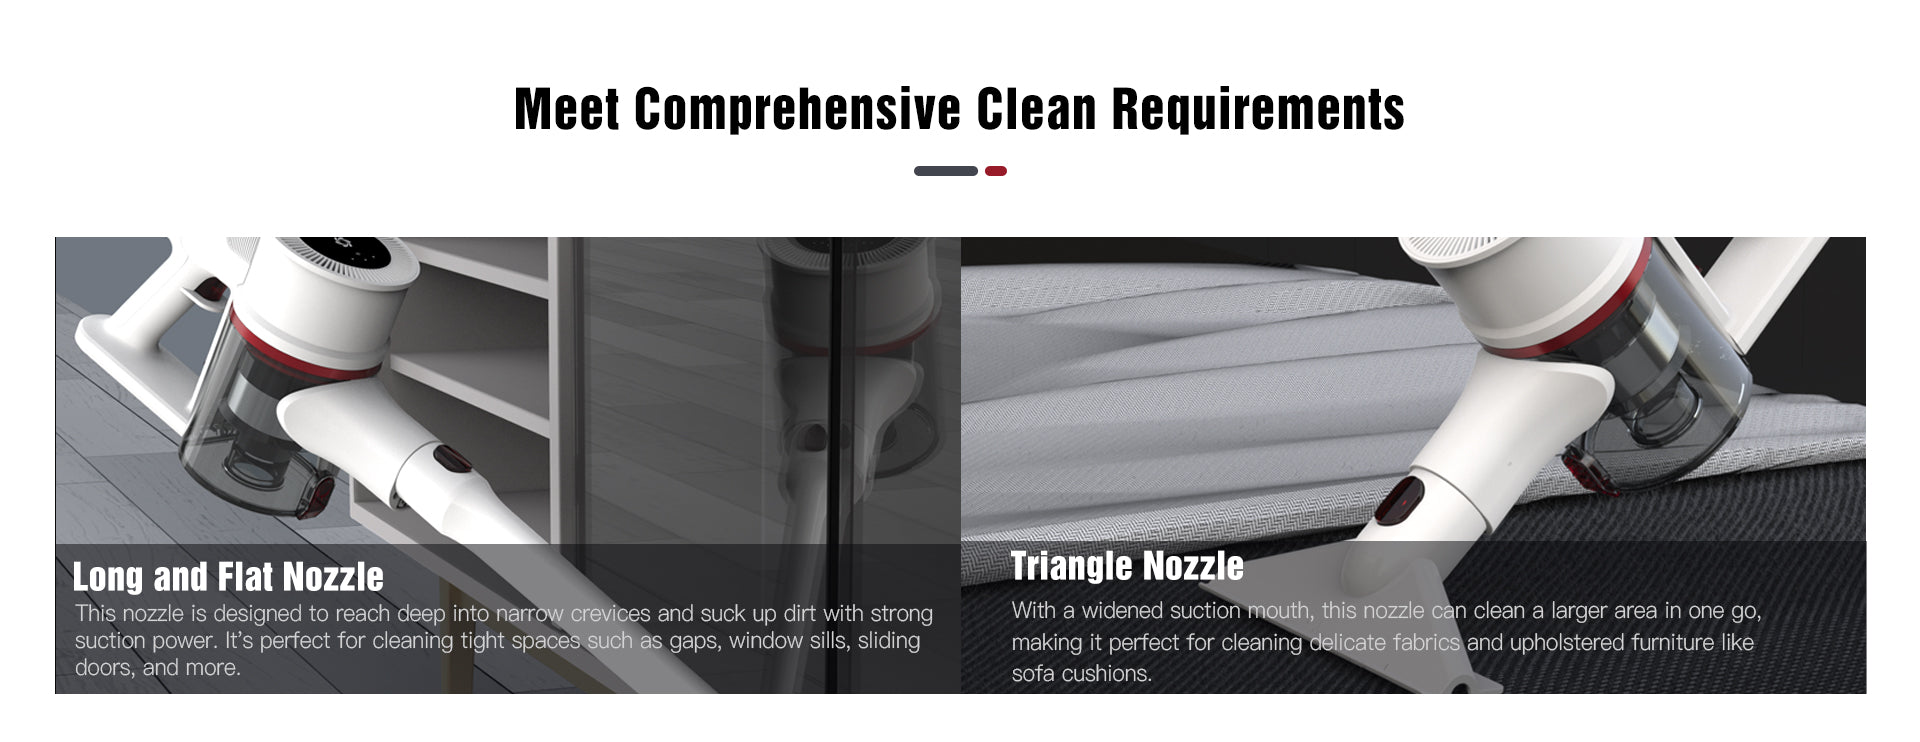 Meet_Comprehensive_Clean_Requirements